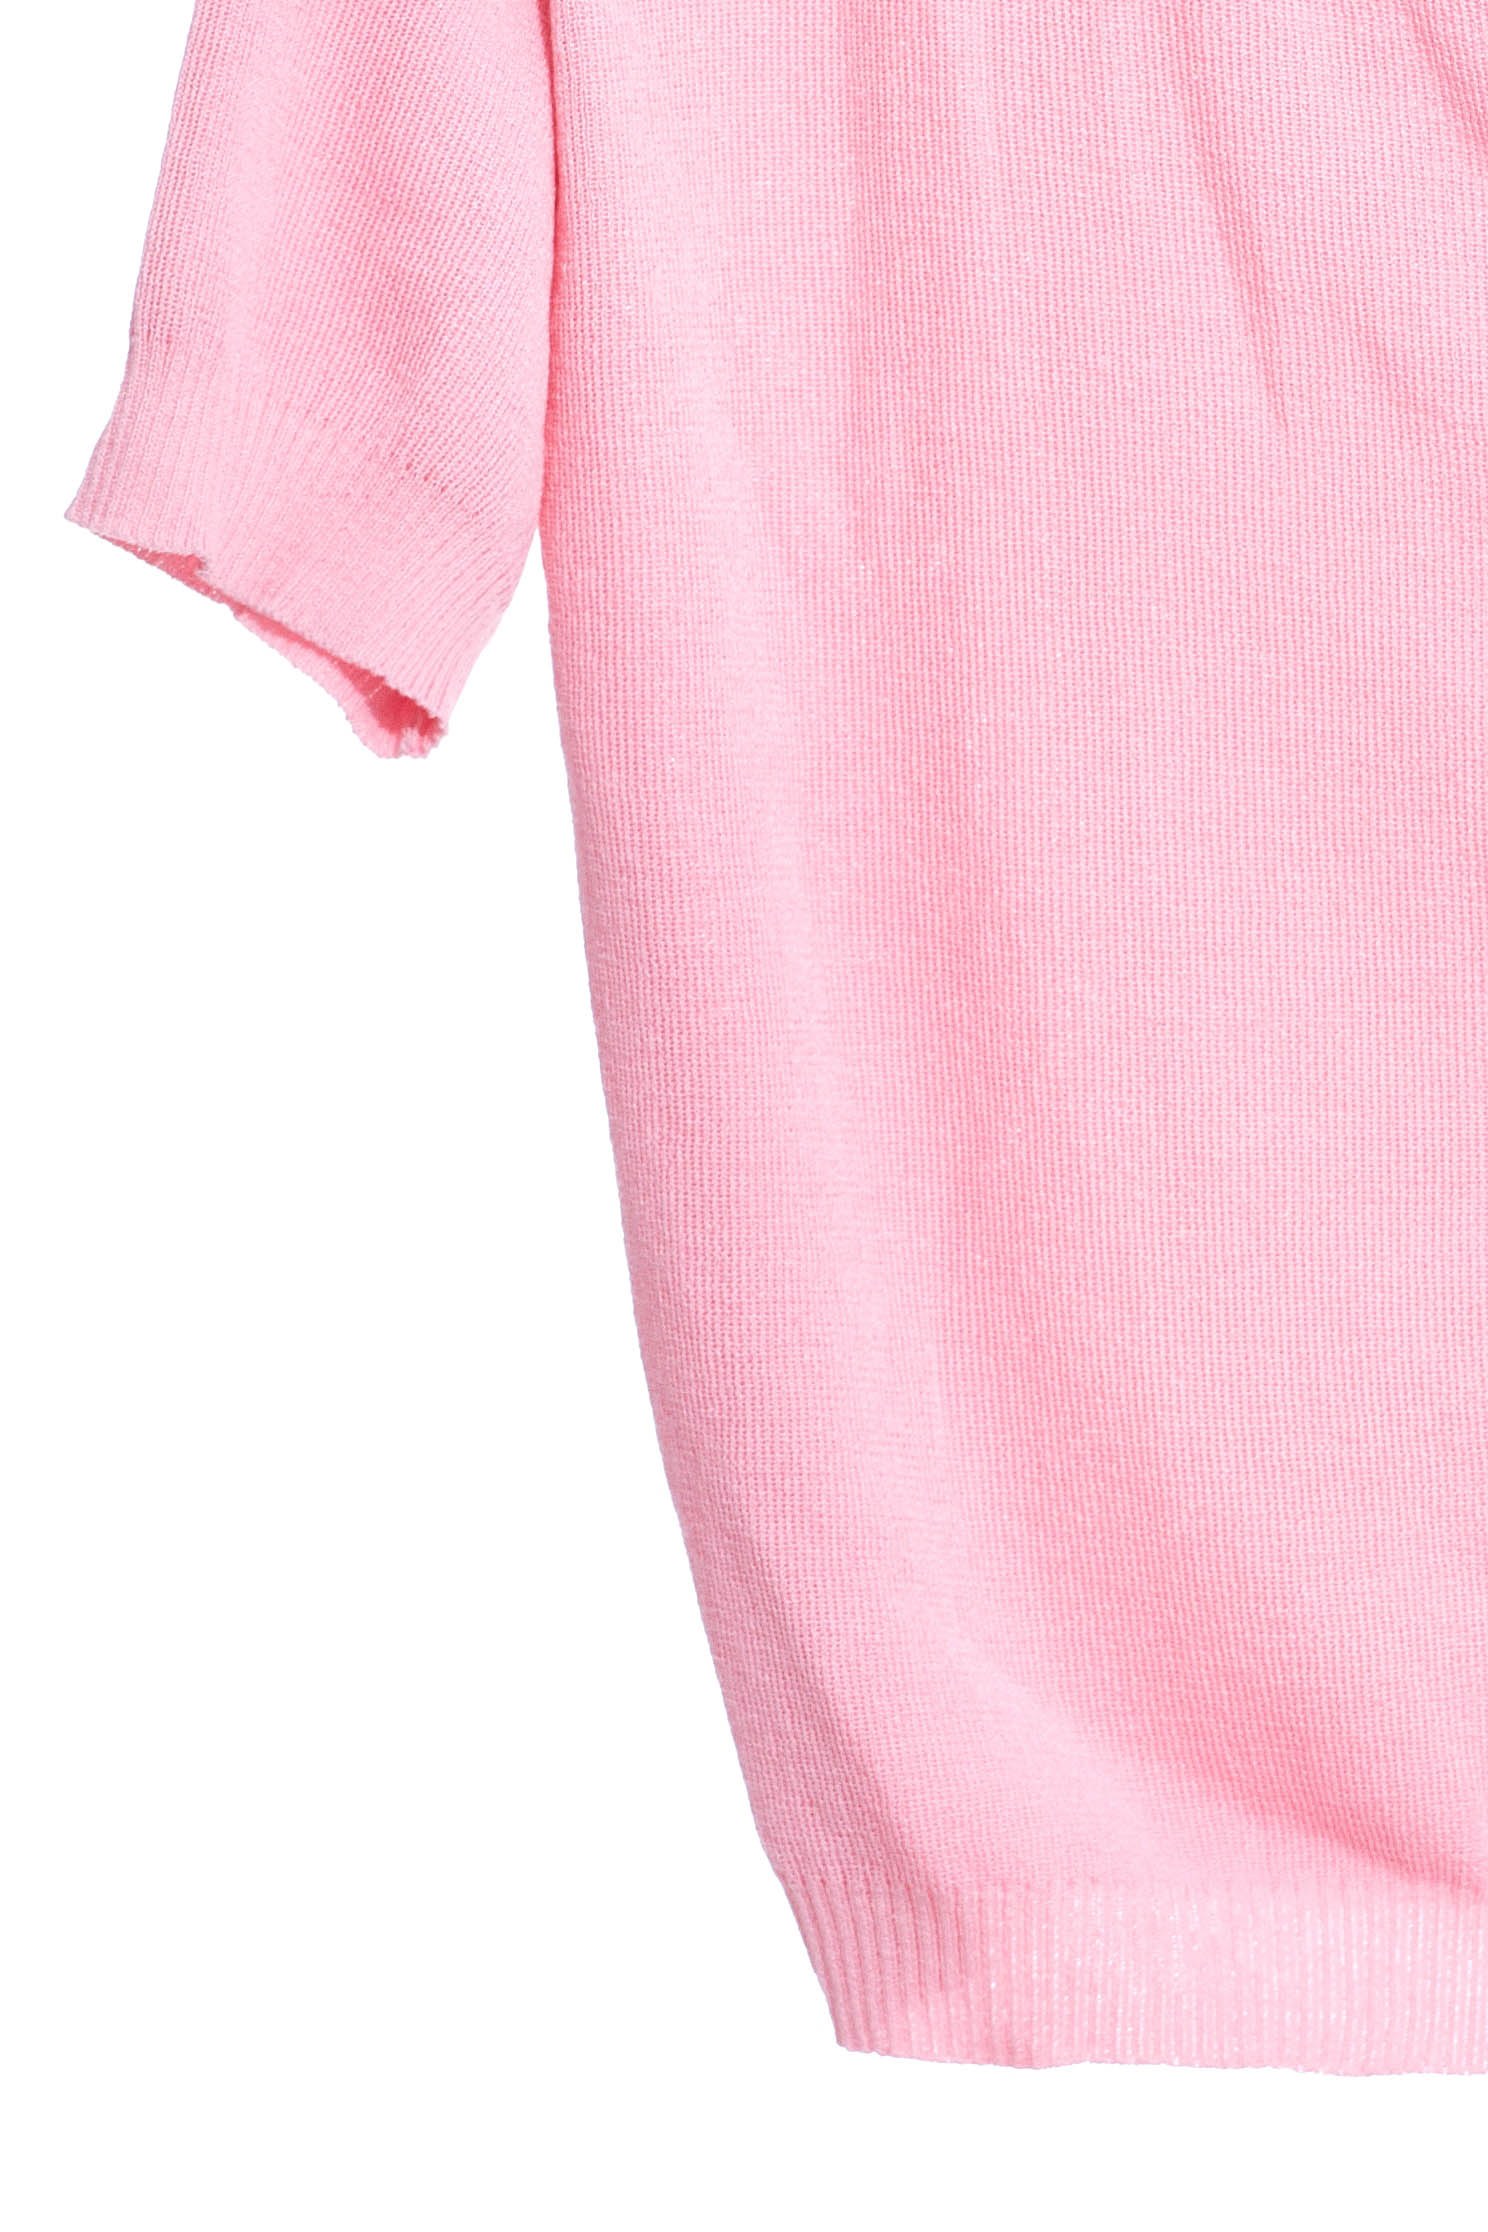 V領鈕釦開襟小外套粉色大V領鈕釦女人設計短袖上衣,上衣,外套,短袖上衣,針織,針織外套